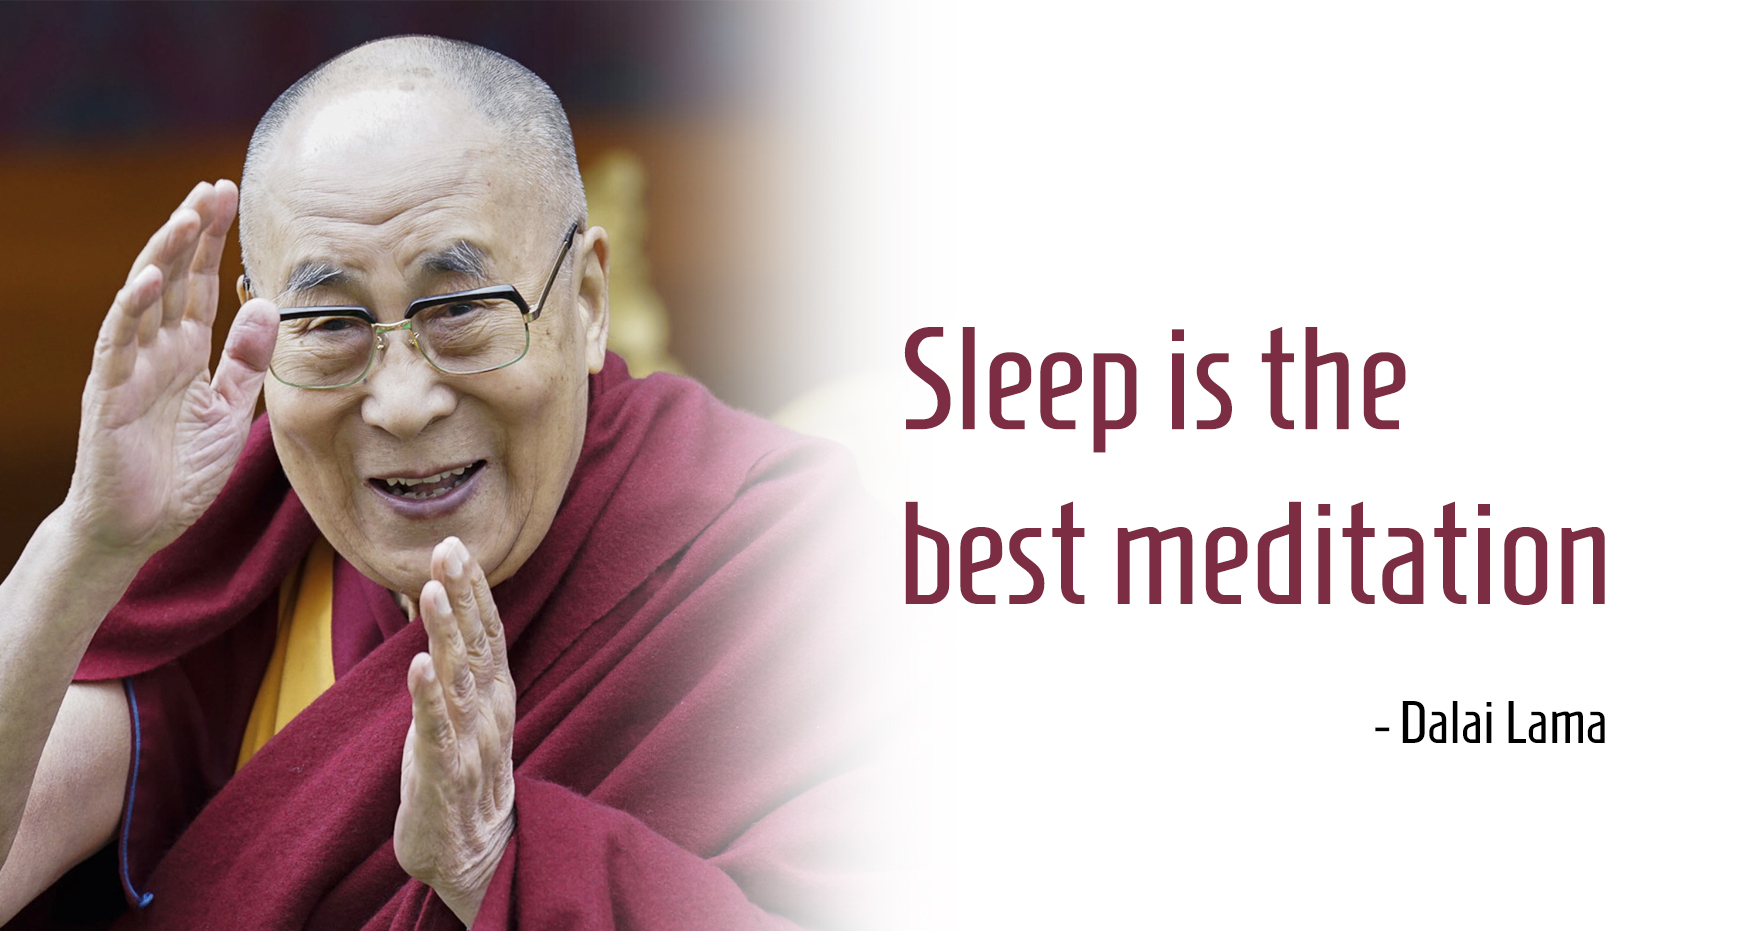 Sleep is the best meditation